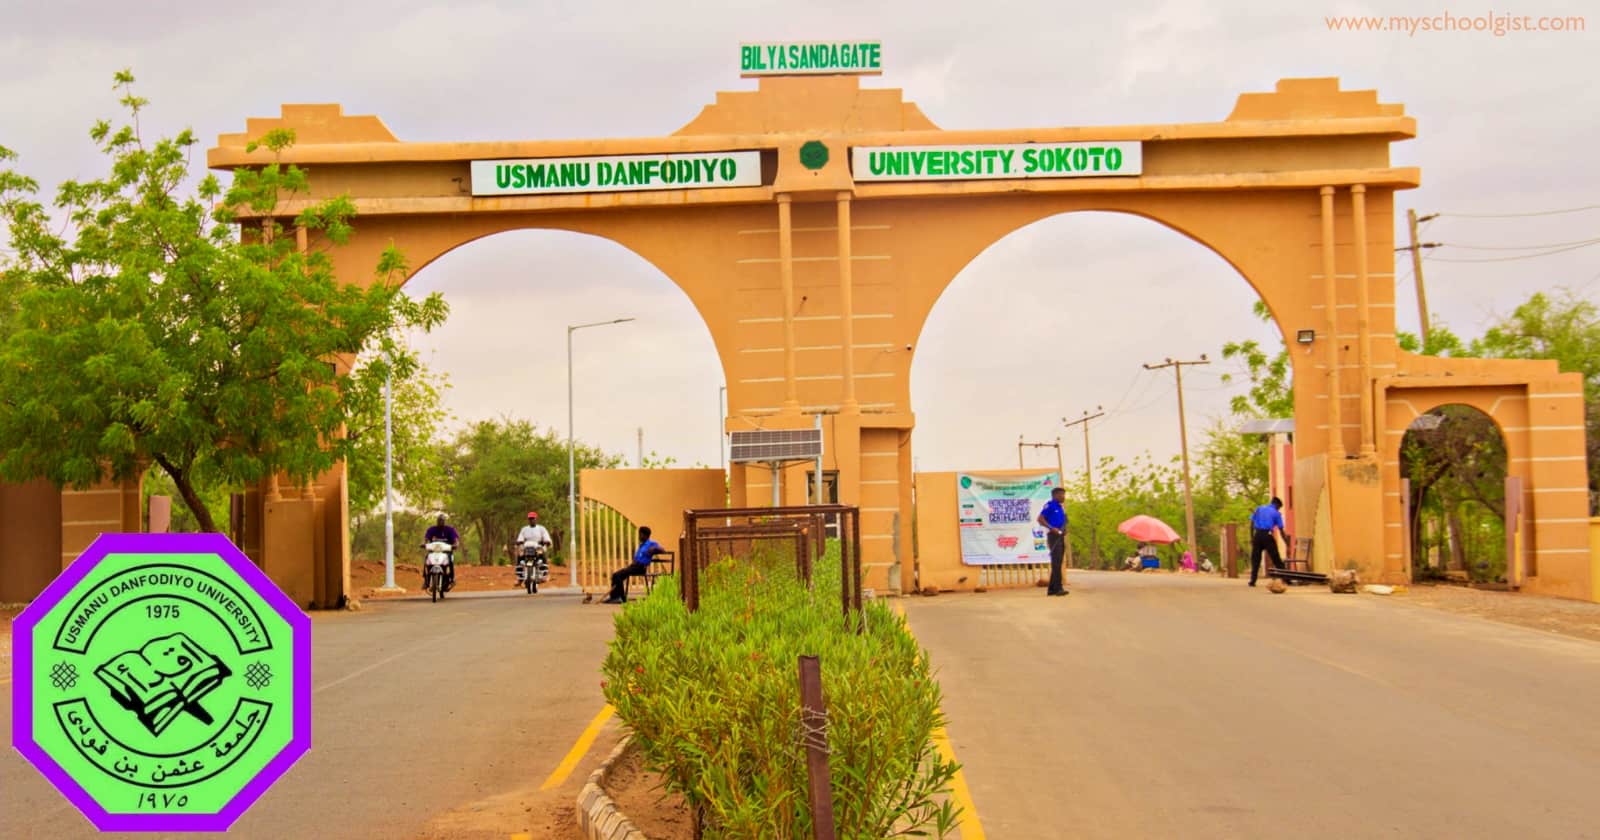 Usmanu Danfodiyo University Sokoto (UDUSOK) Acceptance Fee